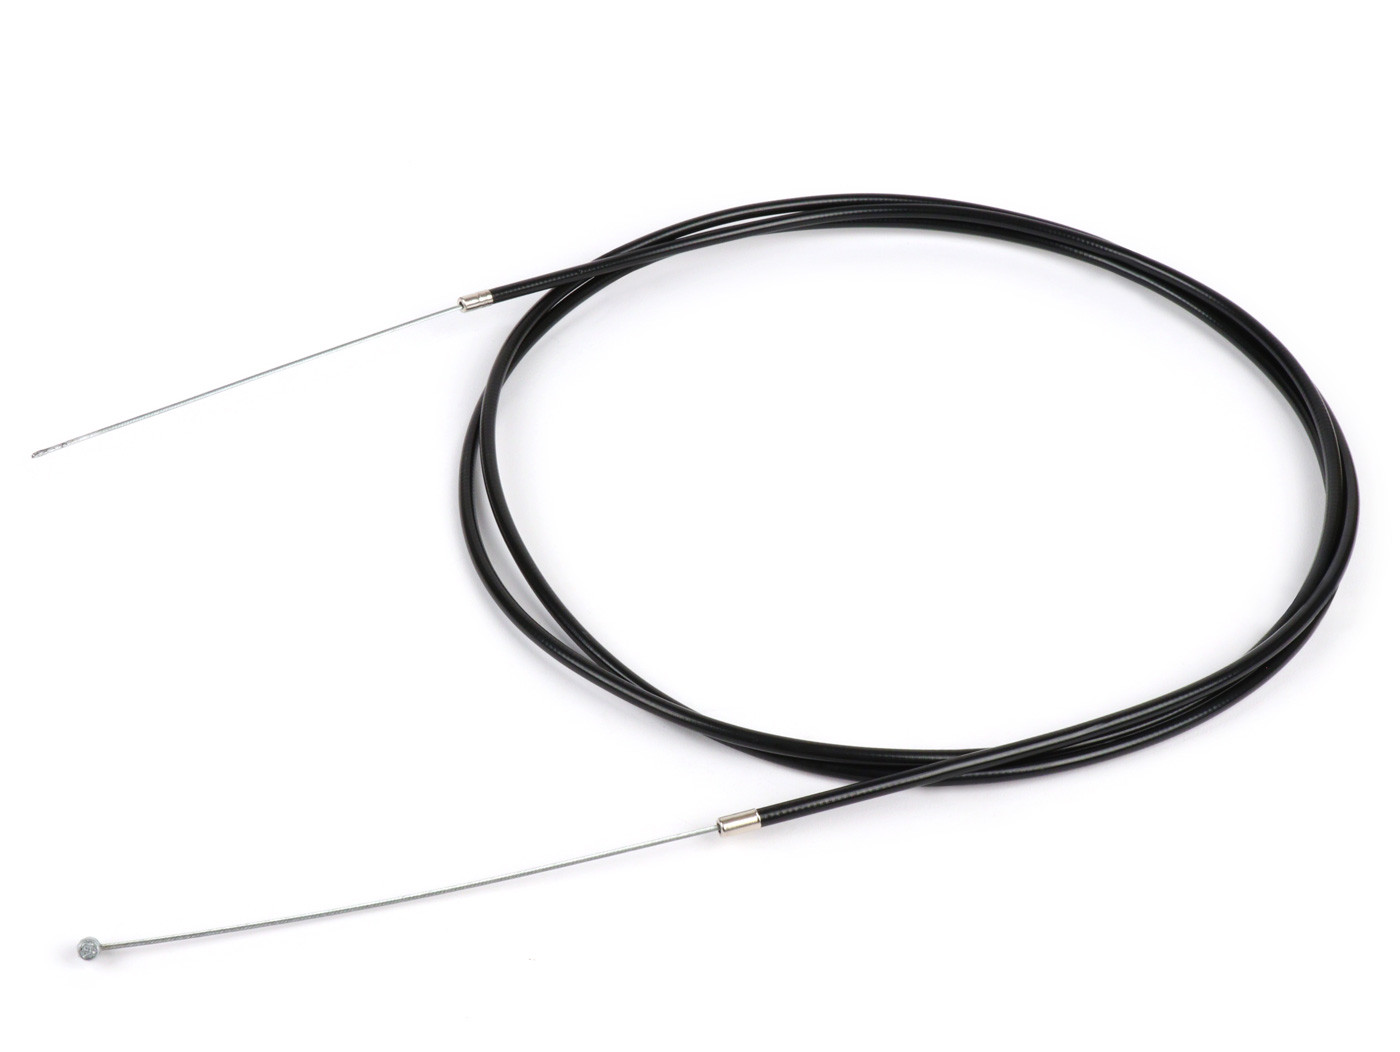 Univerzális kábel BGM Original Ř=1.6mm x 2500mm, köpeny= 2200mm, mellbimbó Ř=5.5mm x 7.5mm, belső köpeny PE, fekete, váltókábelként használatos.